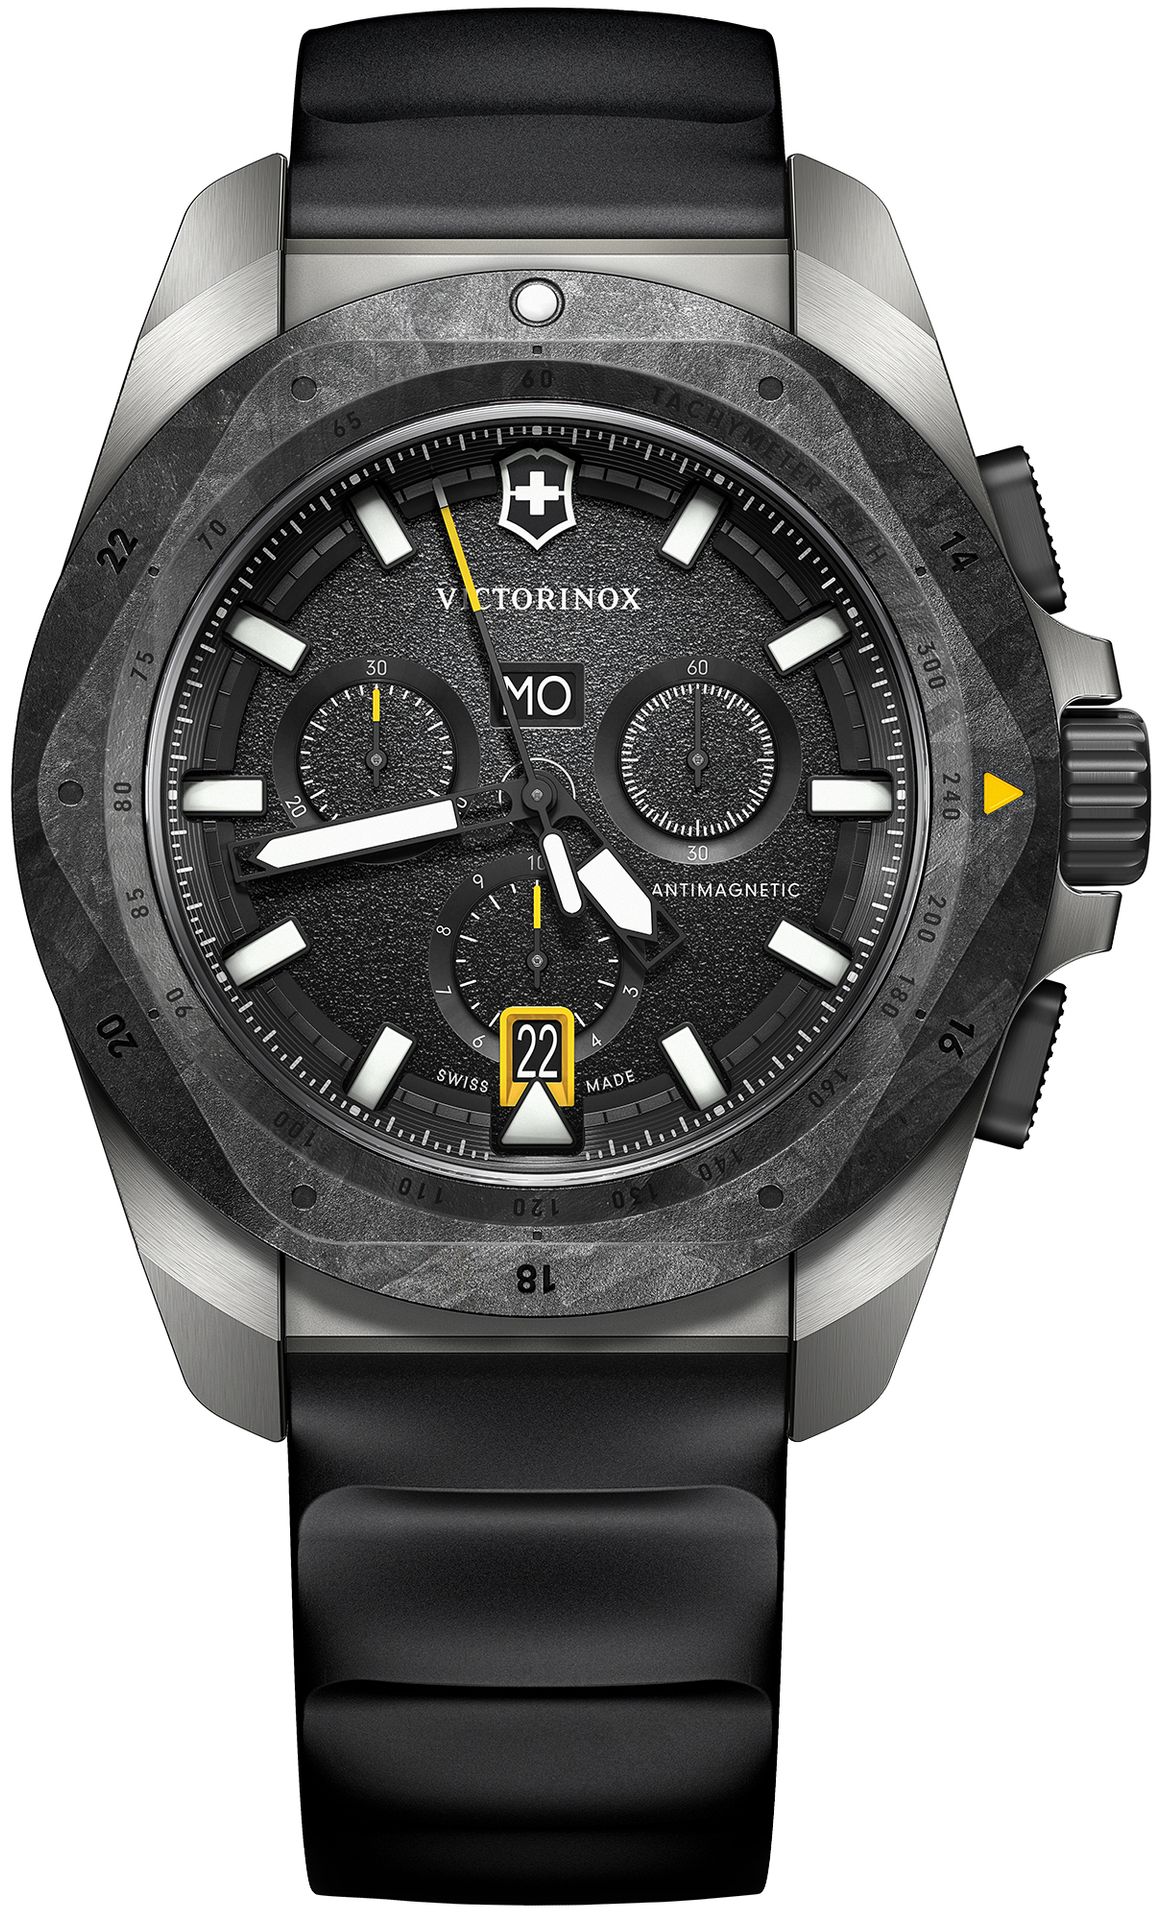 Zegarek Victorinox 242011 I.N.O.X. Quartz Chrono Carbon/Titanium  - Natychmiastowa WYSYŁKA 0zł (DHL DPD INPOST) | Grawer 1zł | Zwrot 100 dni